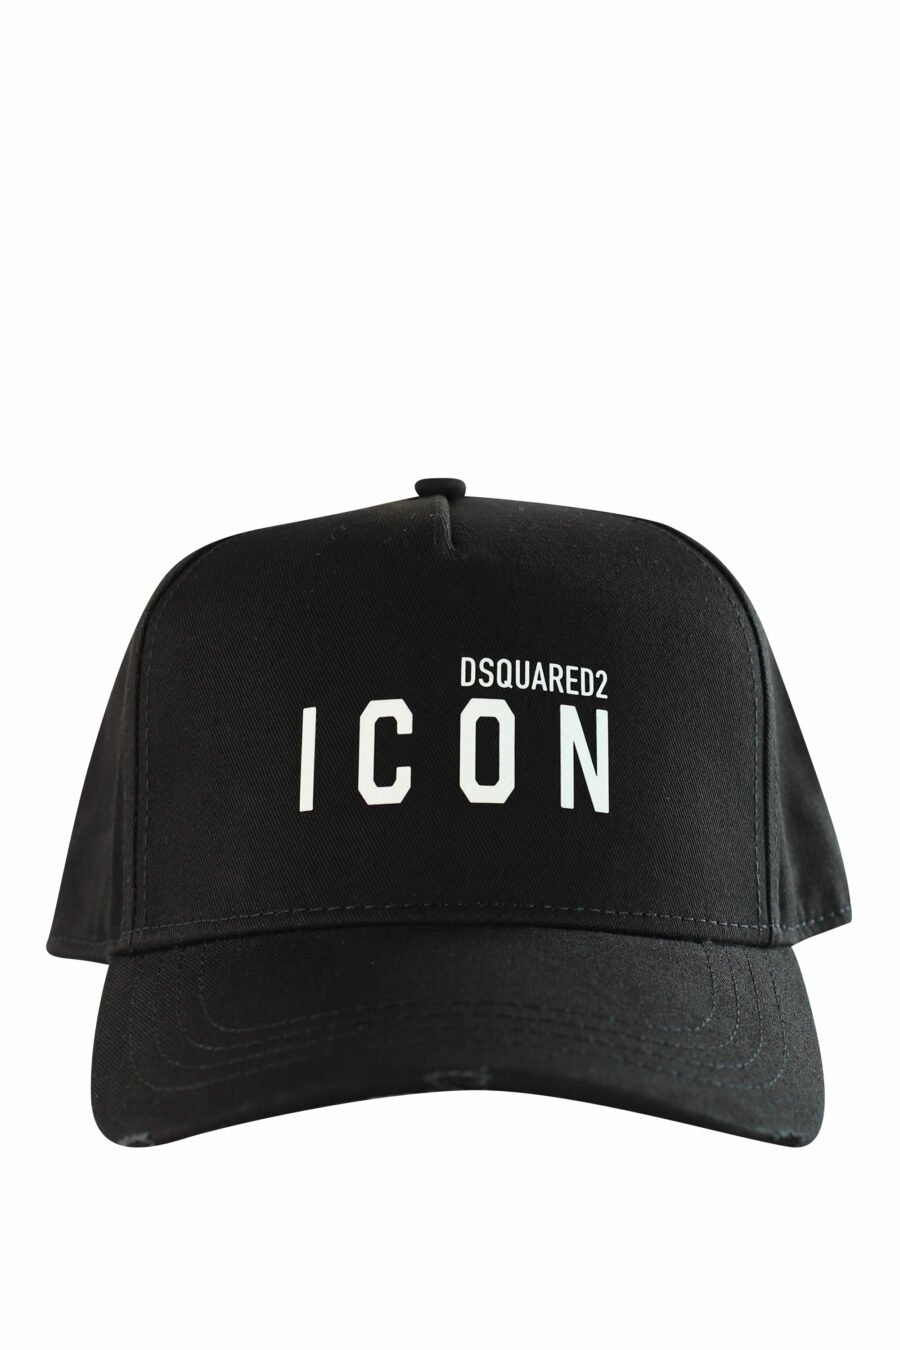 Gorra negra con doble logo "icon" - IMG 1211